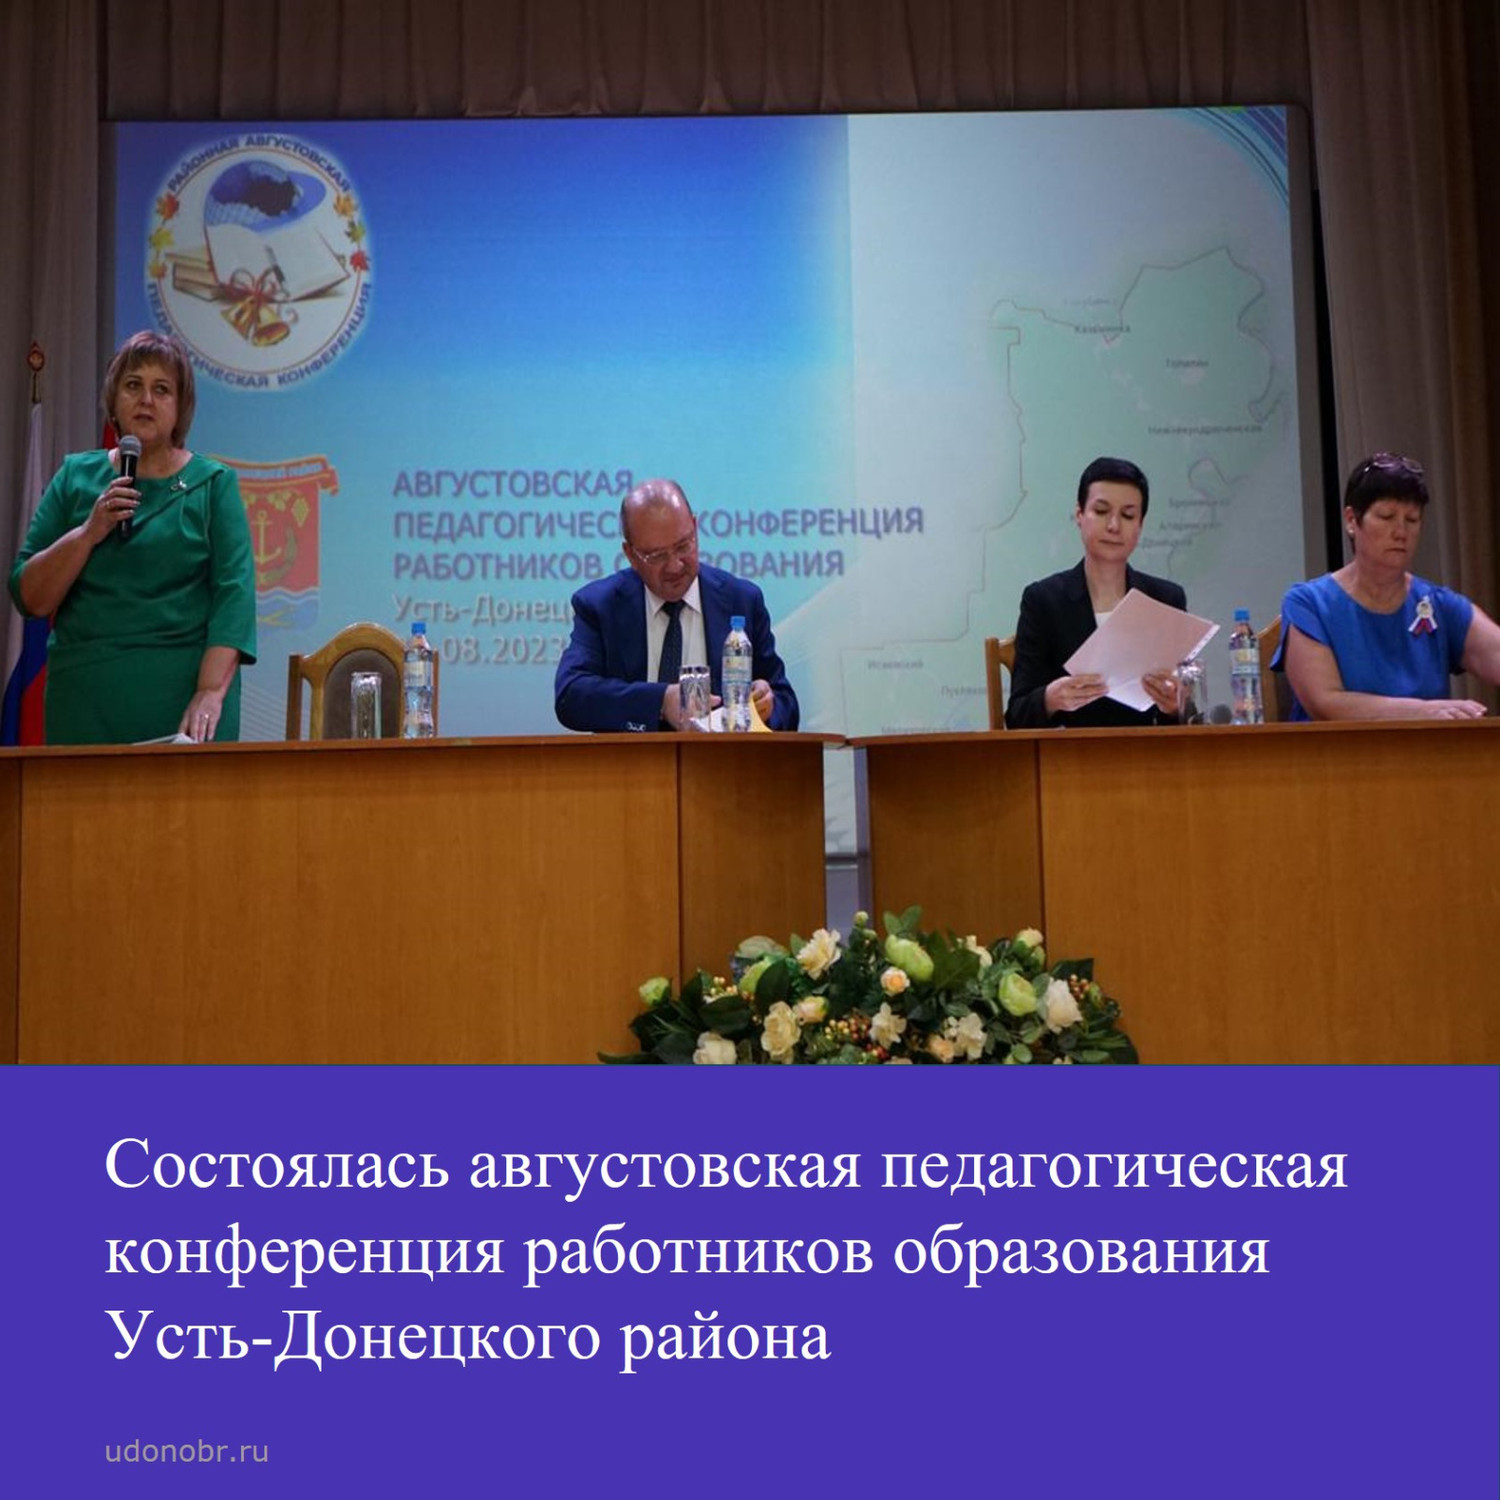 Состоялась августовская педагогическая конференция работников образования Усть-Донецкого района